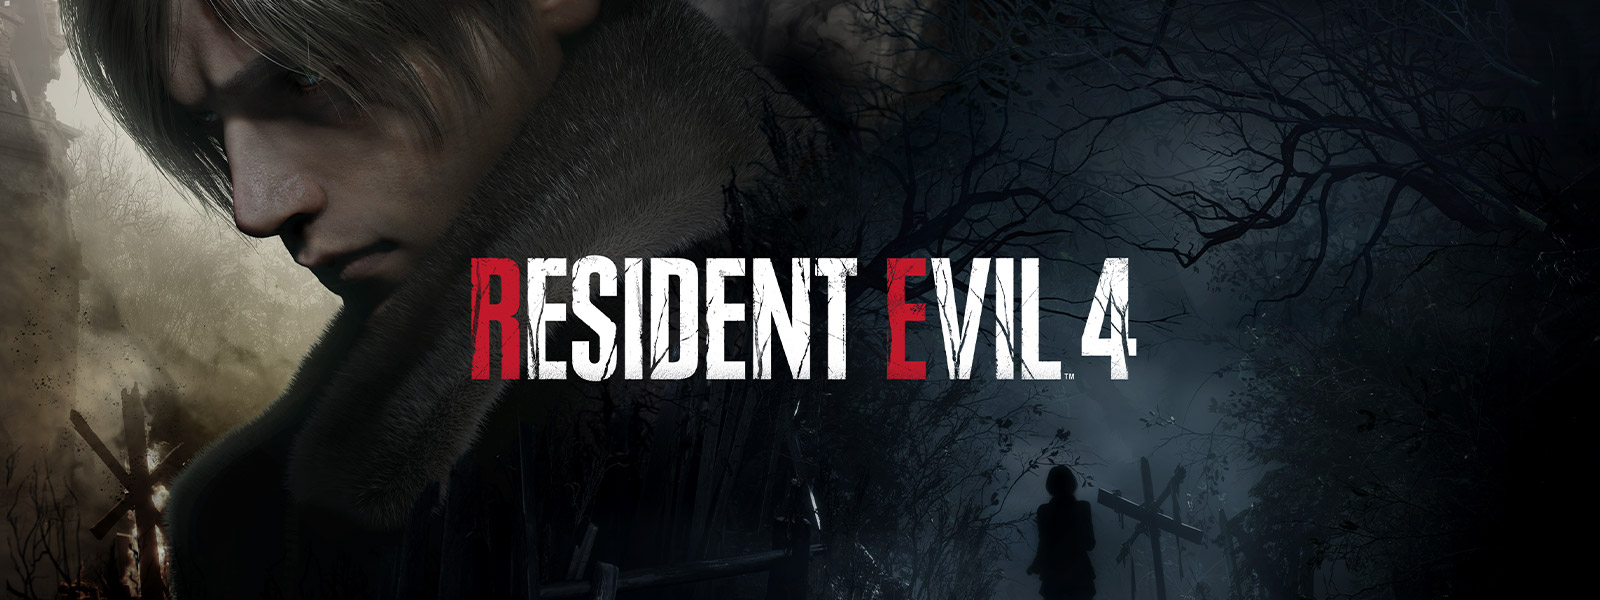 Resident Evil 4, Un uomo dai capelli grigi volta le spalle con aria solenne mentre una donna percorre un sentiero in un bosco buio e inquetante.